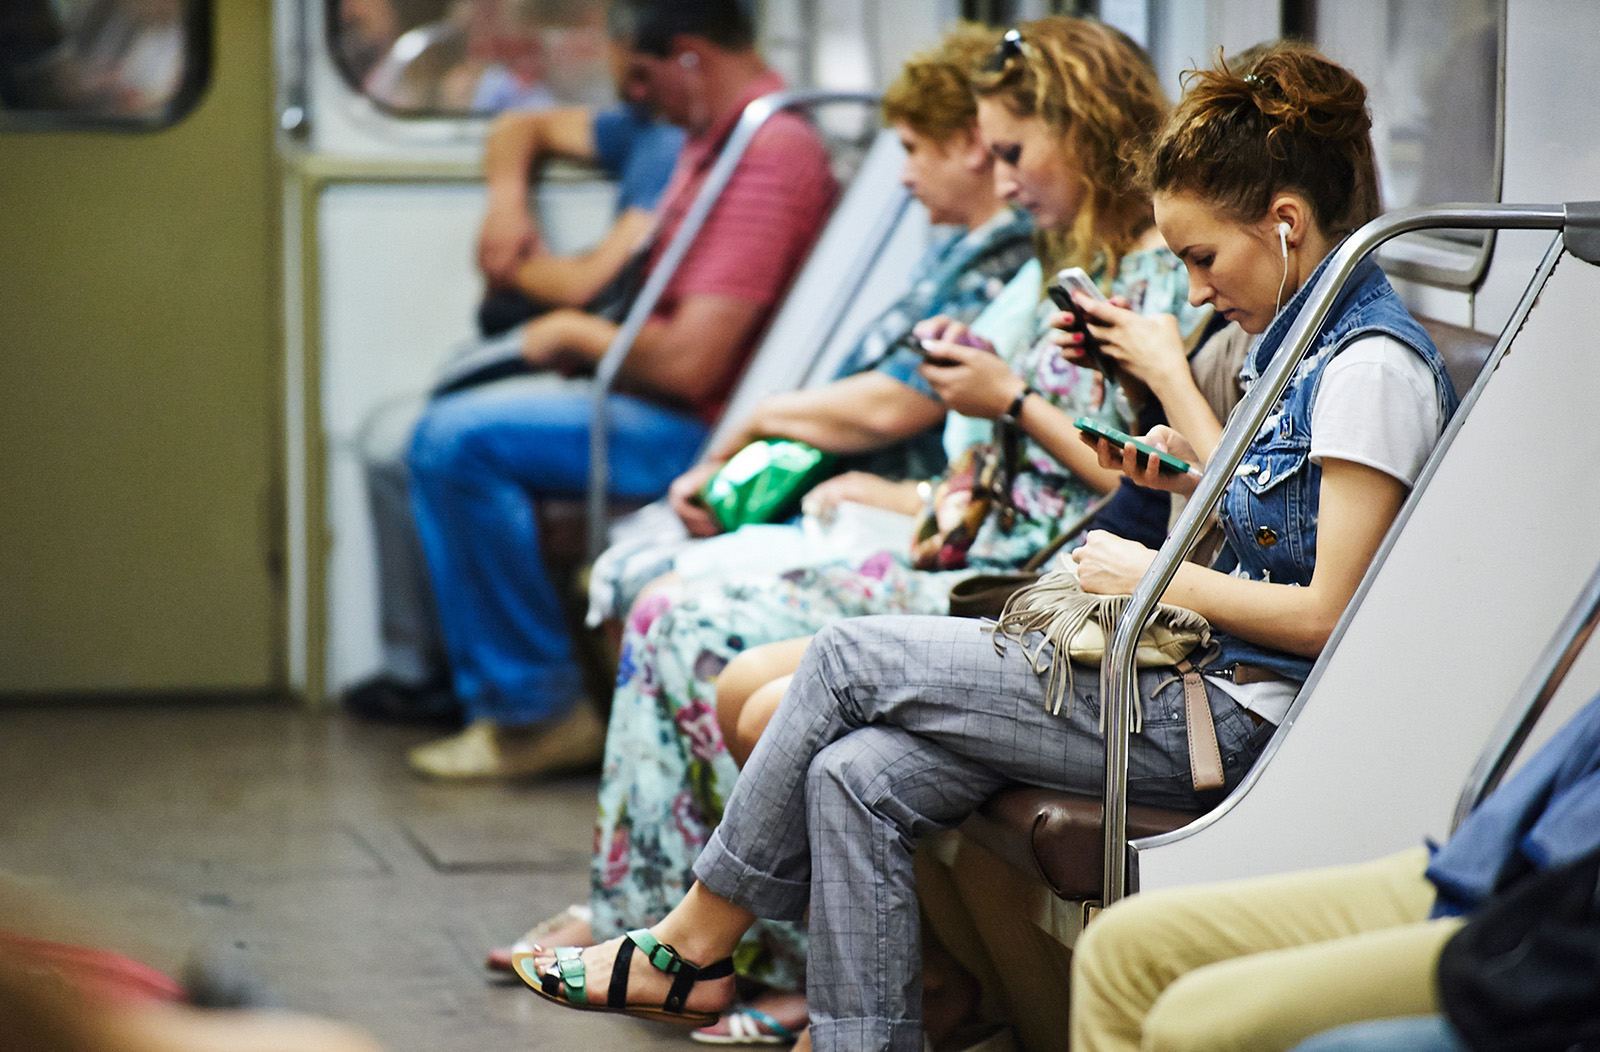 Номер телефона метрополитена. Люди в метро. Люди с телефонами в метро. Человек сидит в метро. Современное метро люди.